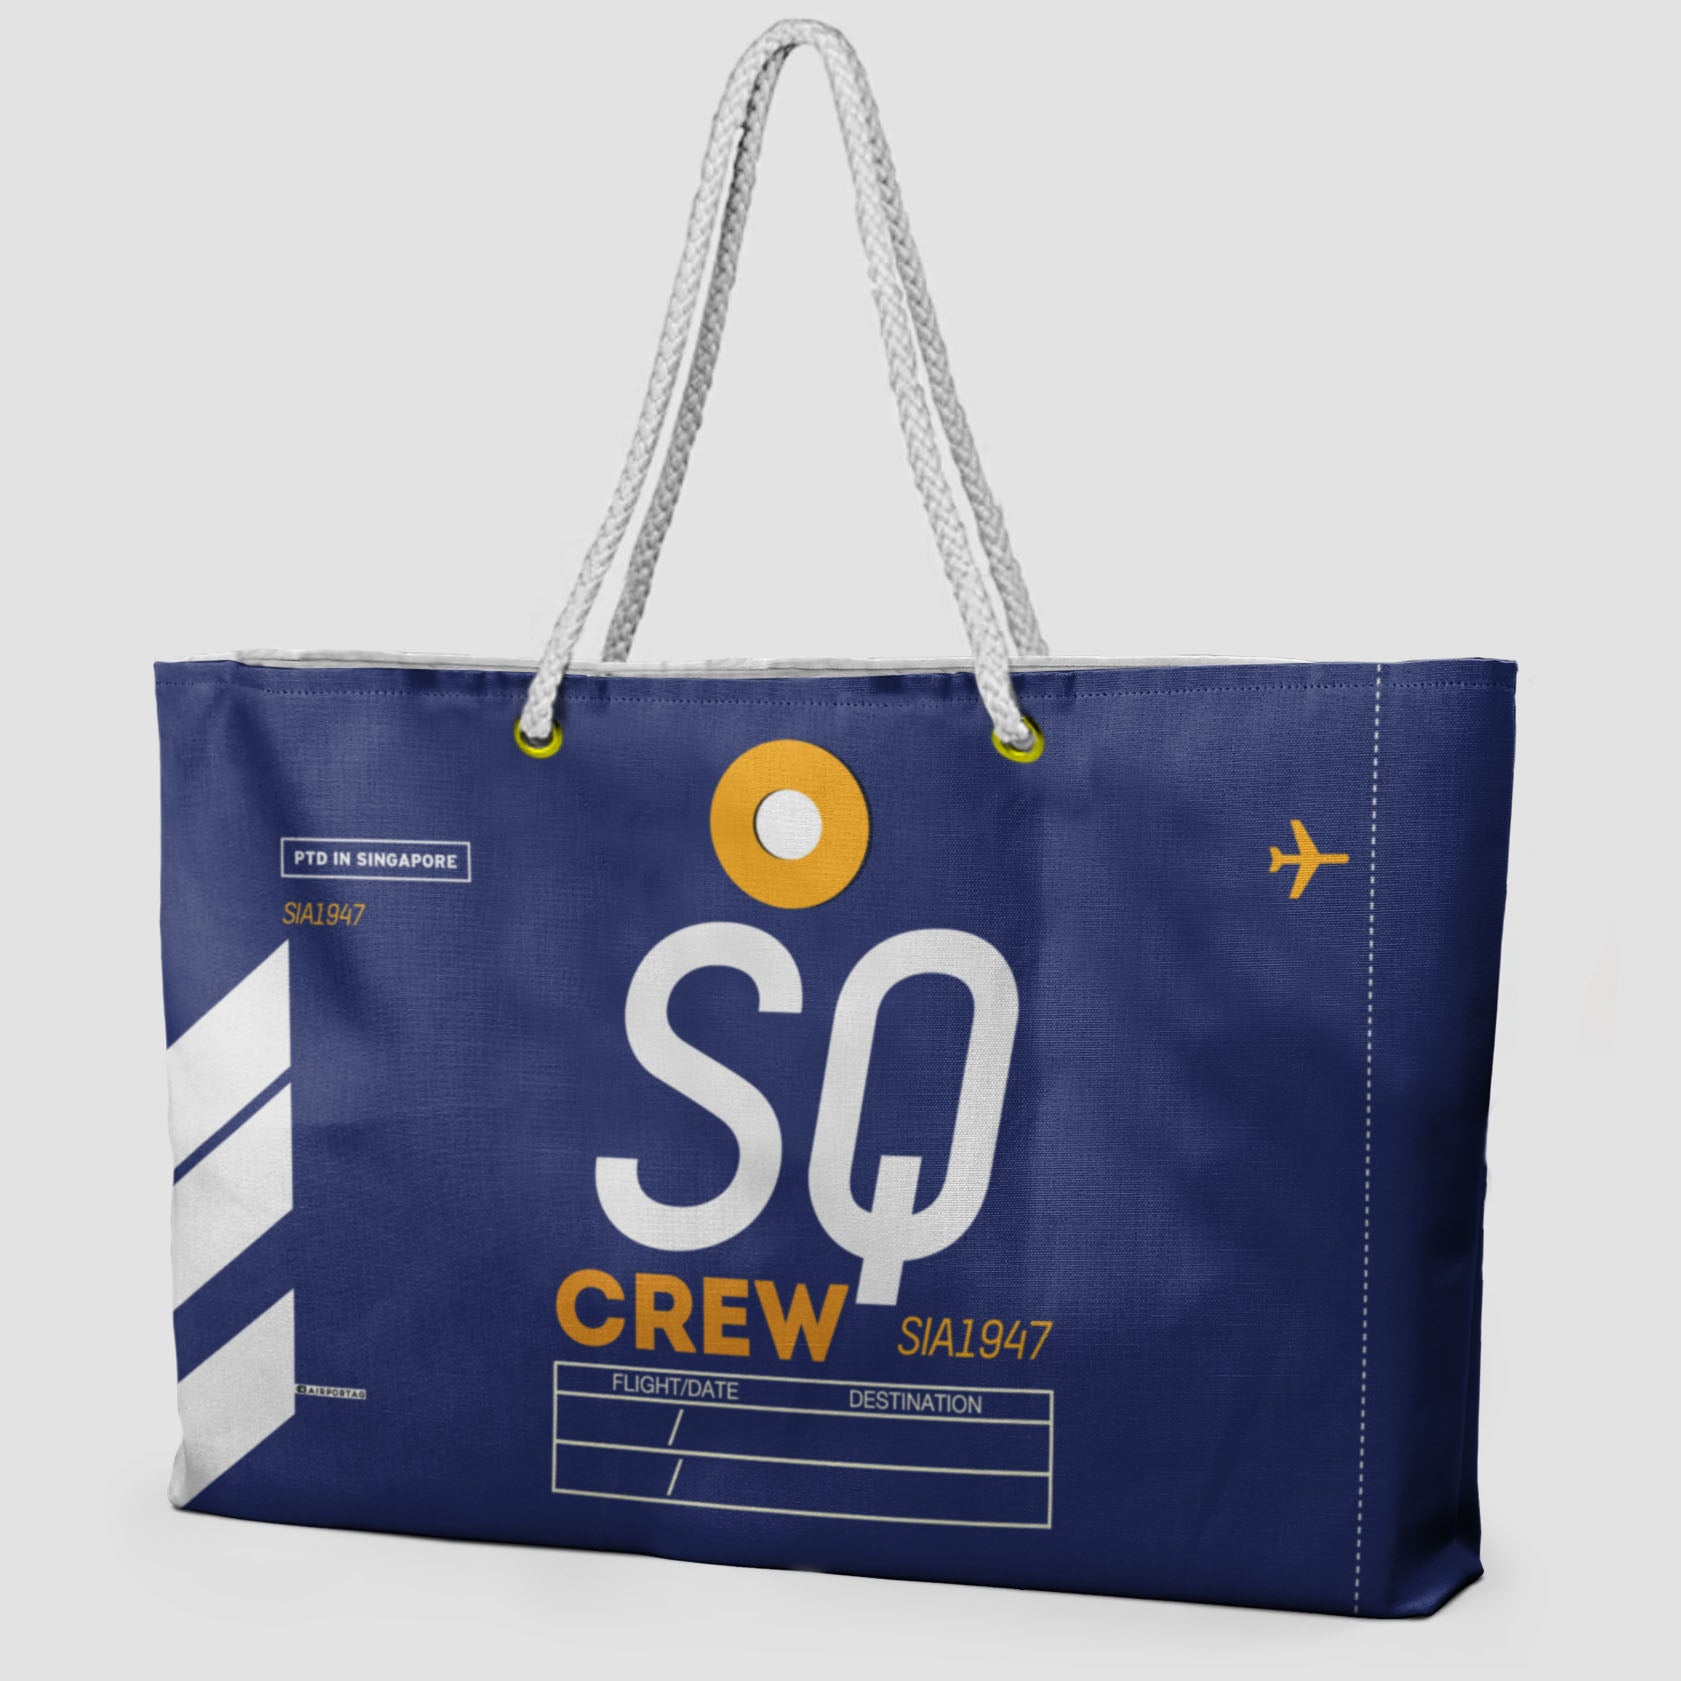 SQ - Weekender Bag - Airportag